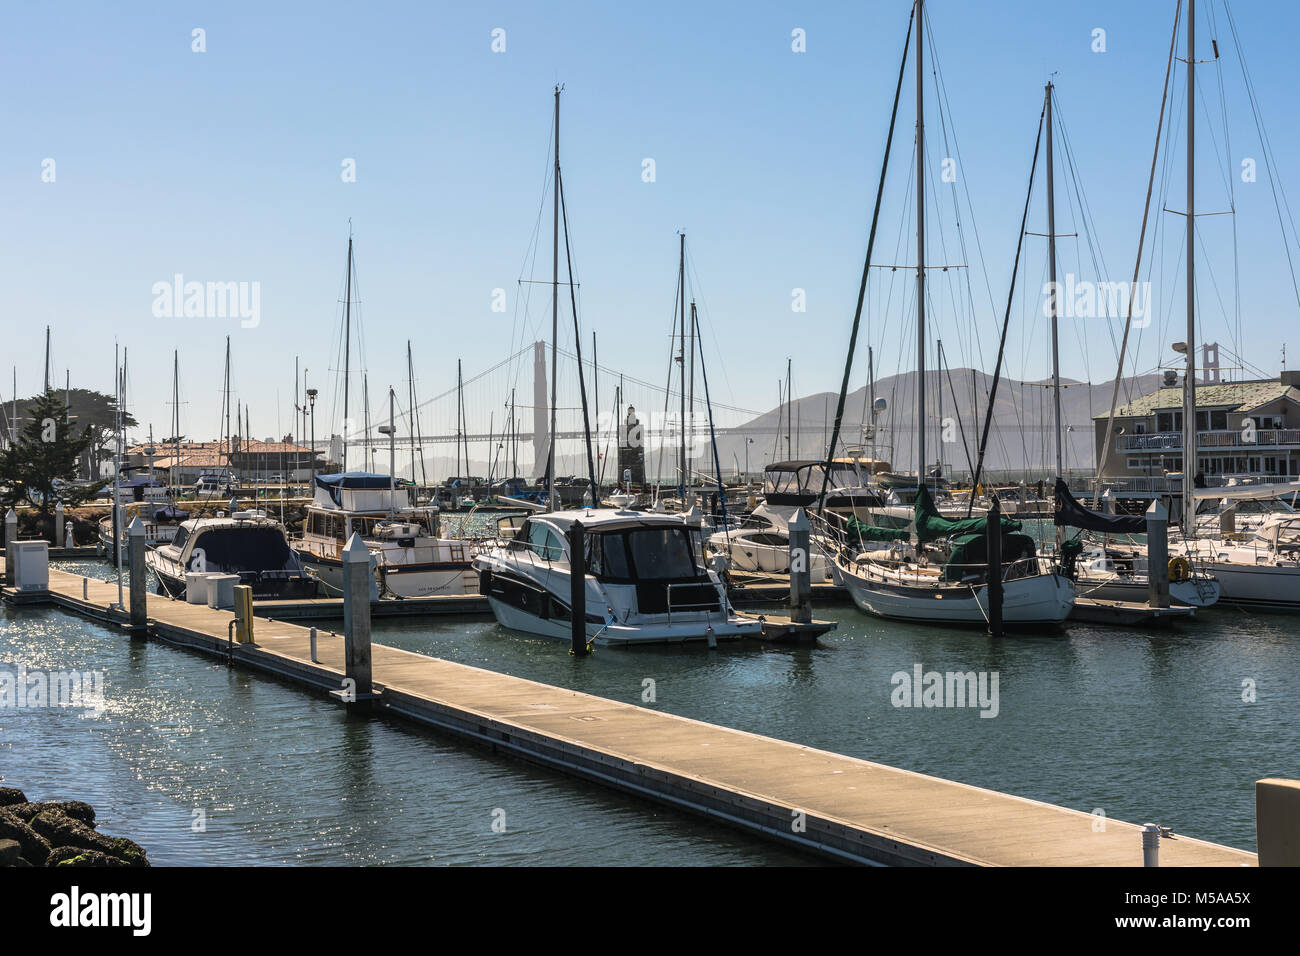 San Francisco, Kalifornien, USA - Juni 3, 2017: Segelboote im Hafen mit der Bay Bridge im Hintergrund Stockfoto